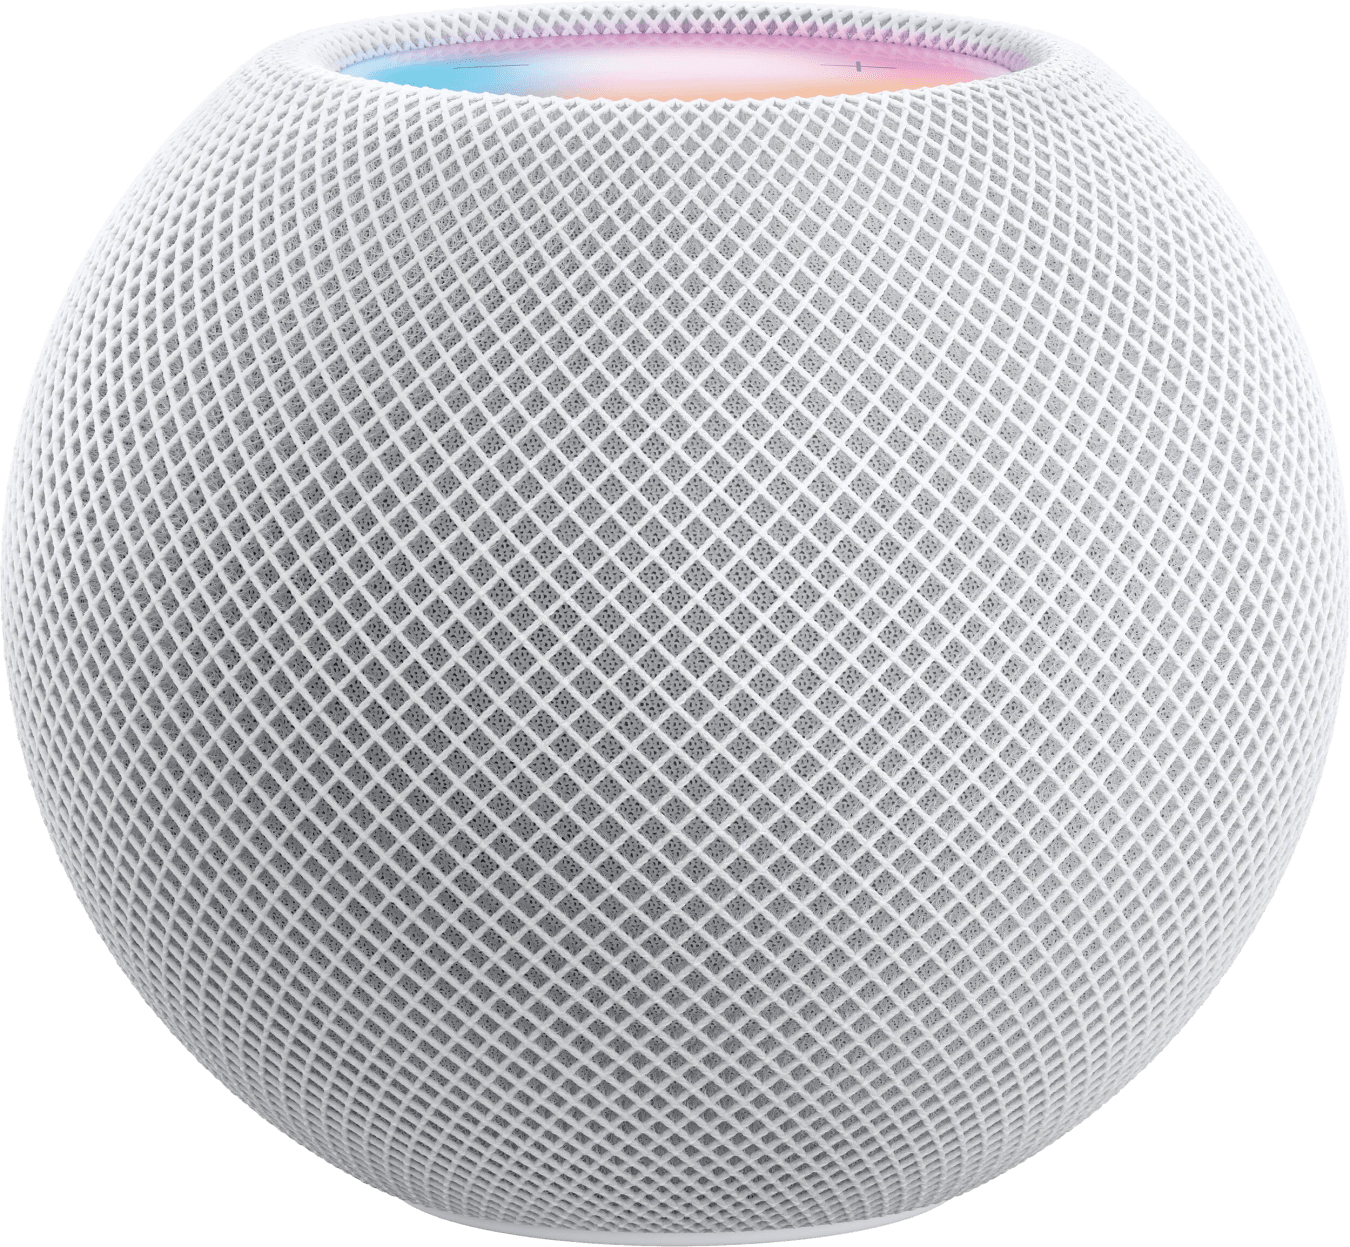 Apple smart speaker HomePod mini